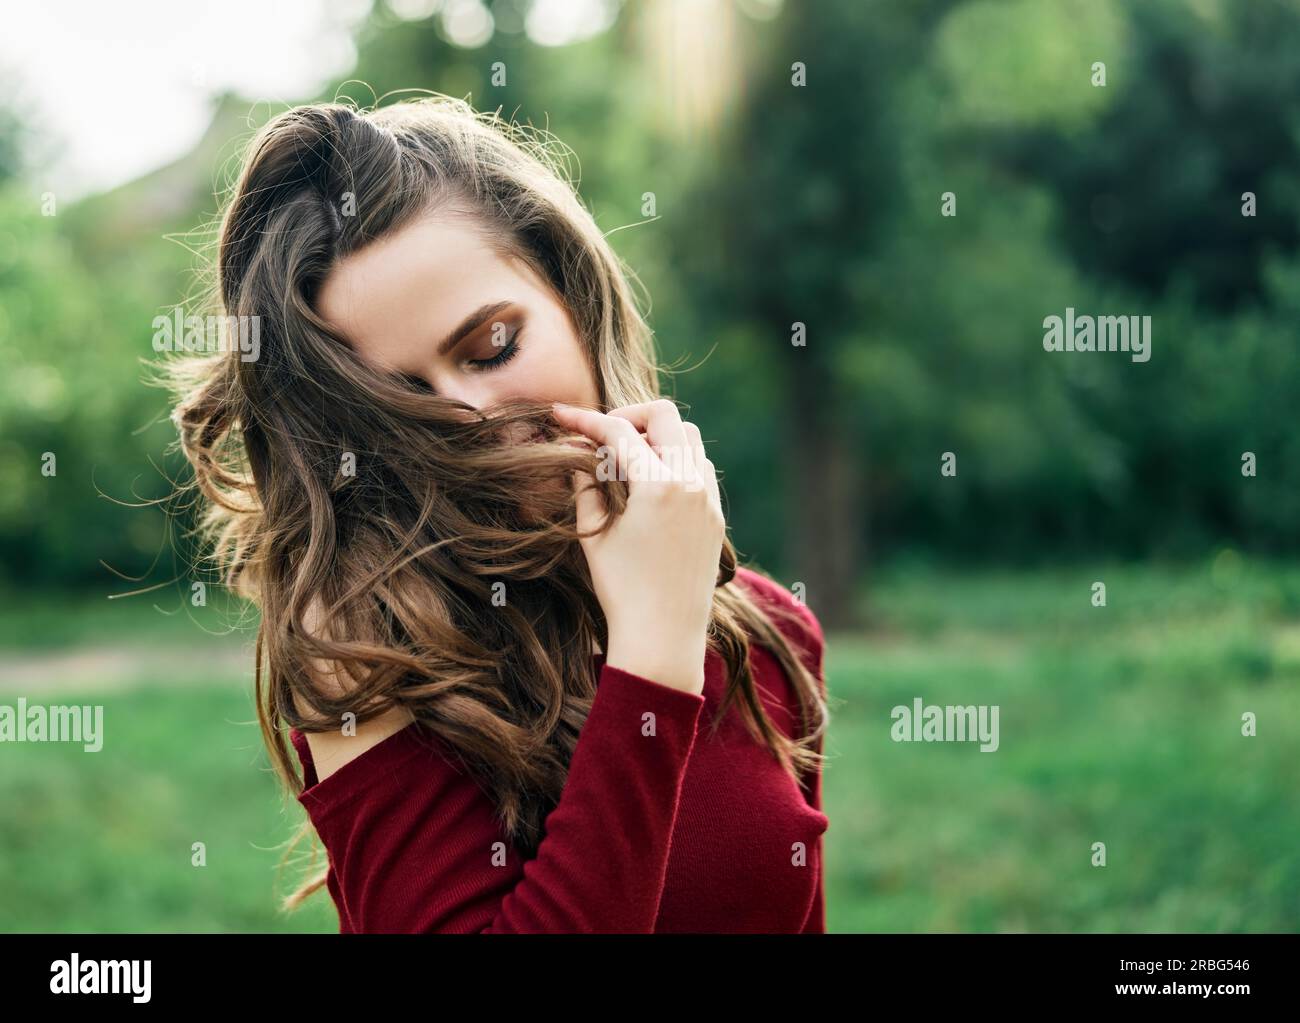 Junge glückliche Frau mit flatternden Haaren Spaß im Freien auf grünen Sommer Natur Hintergrund. Weibliches Schönheitskonzept Stockfoto